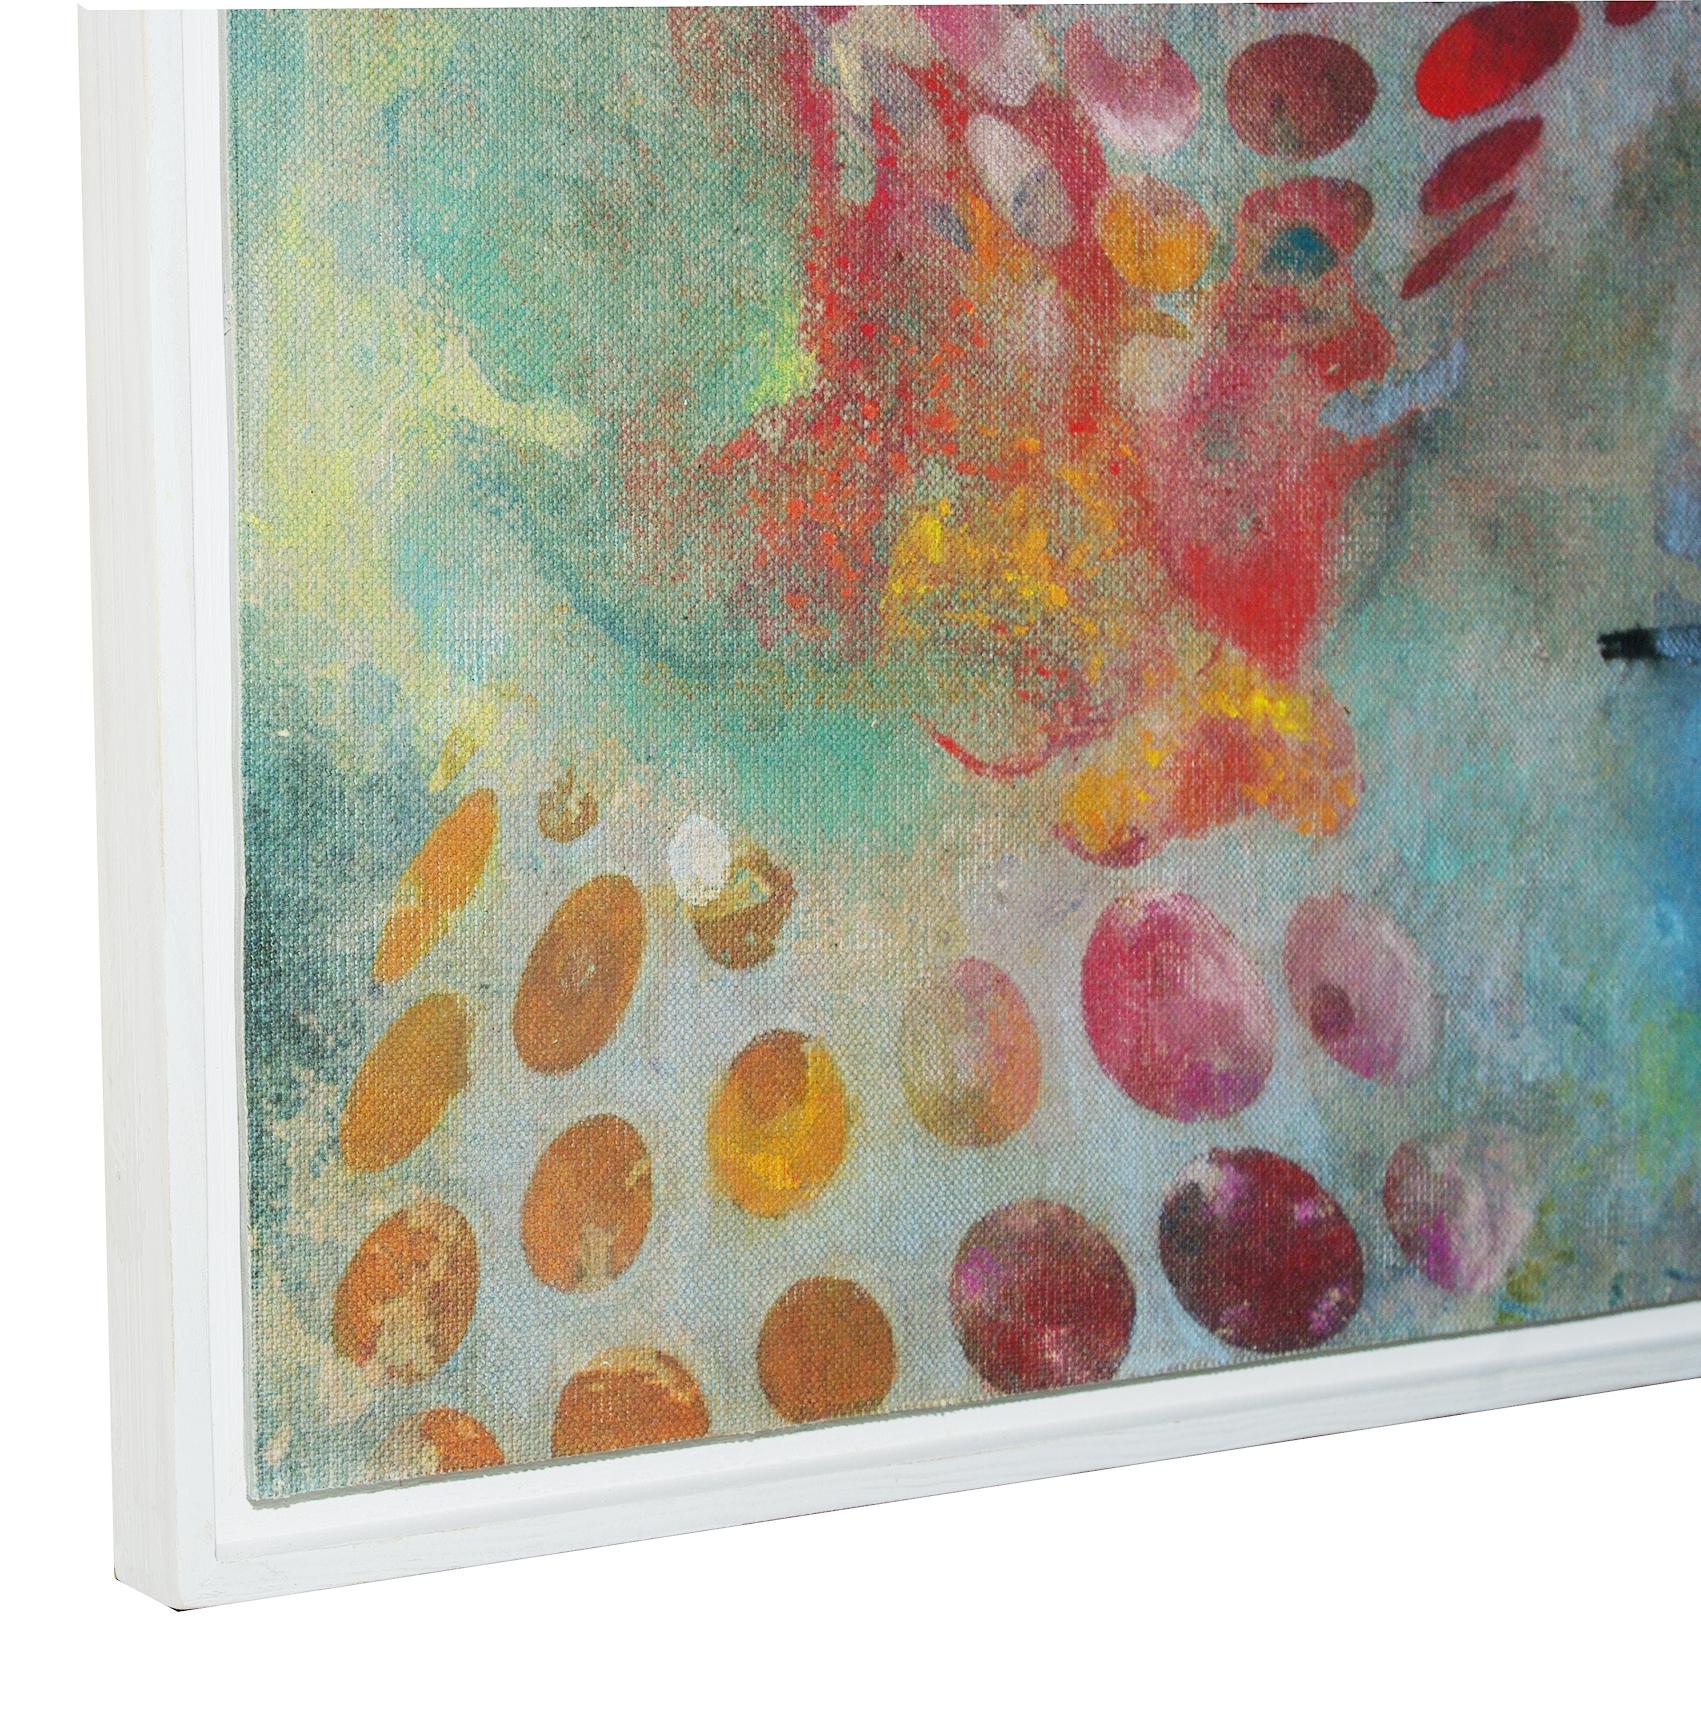 Vögel 024 – Zeitgenössisch, abstrakt, expressionistisch, modern, Straßenkunst, Surrealistisch (Braun), Abstract Painting, von Francisco Nicolás